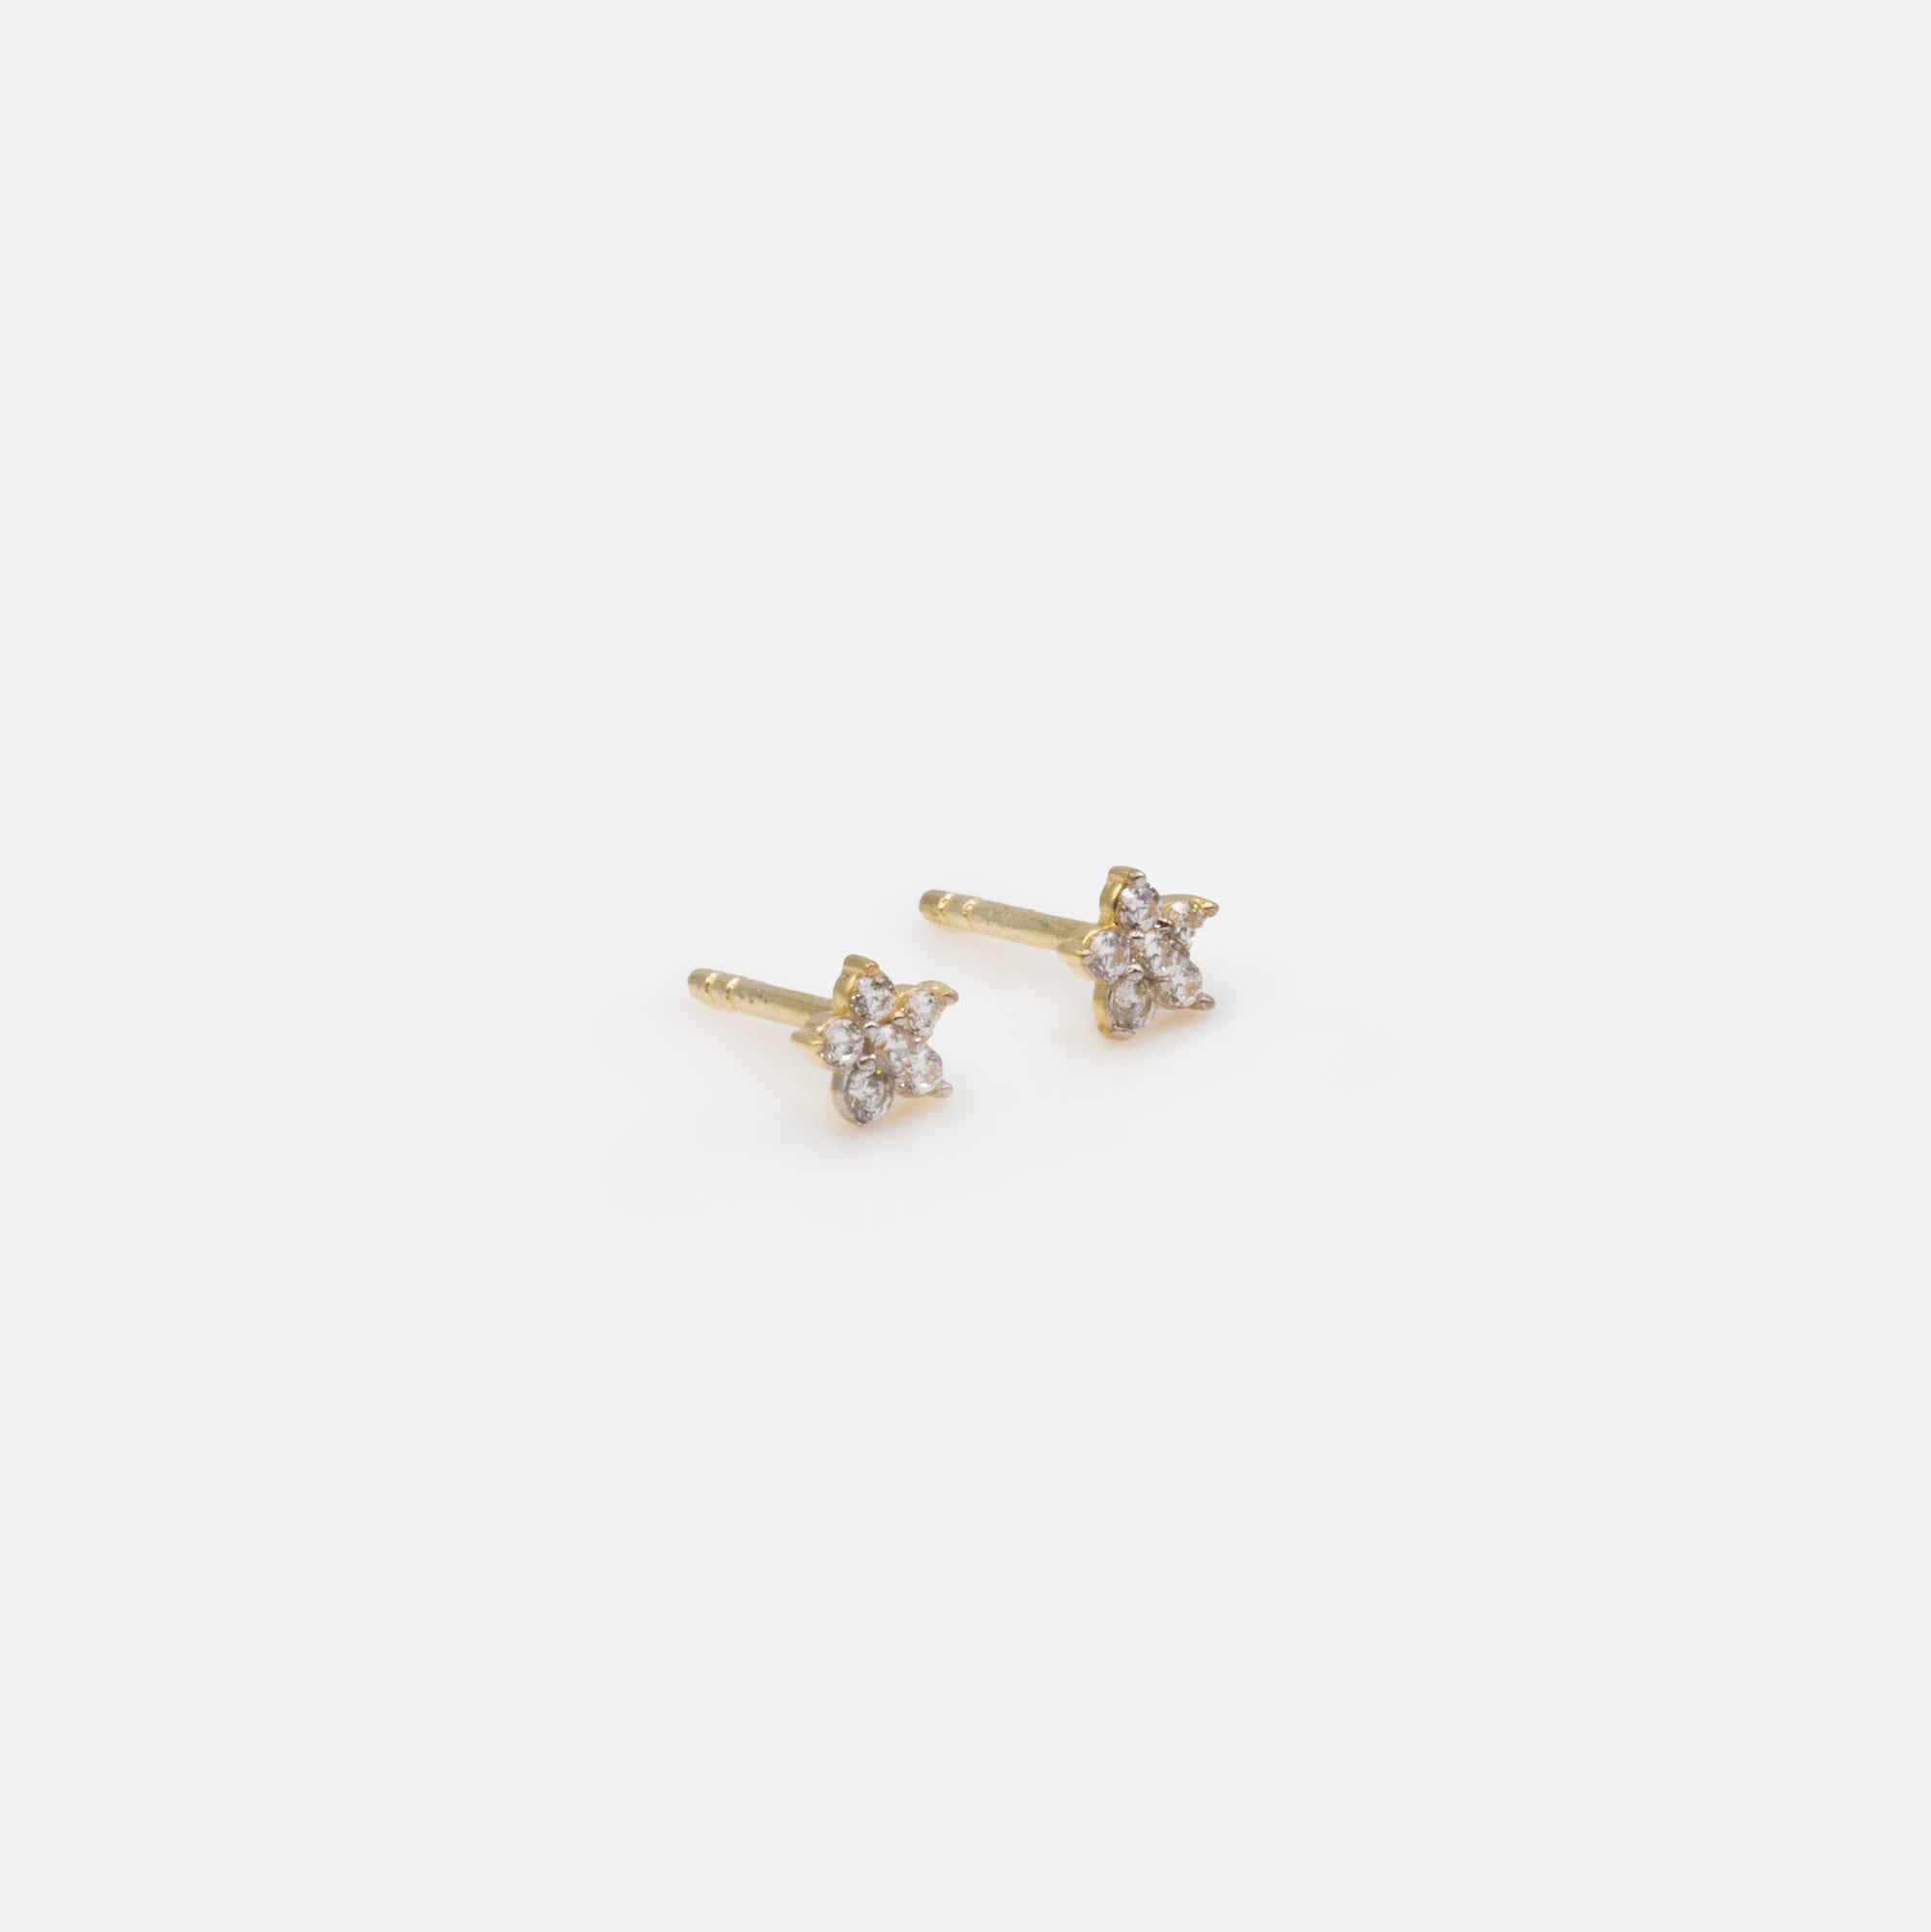 Small cubic zirconia flower earrings in 10k gold